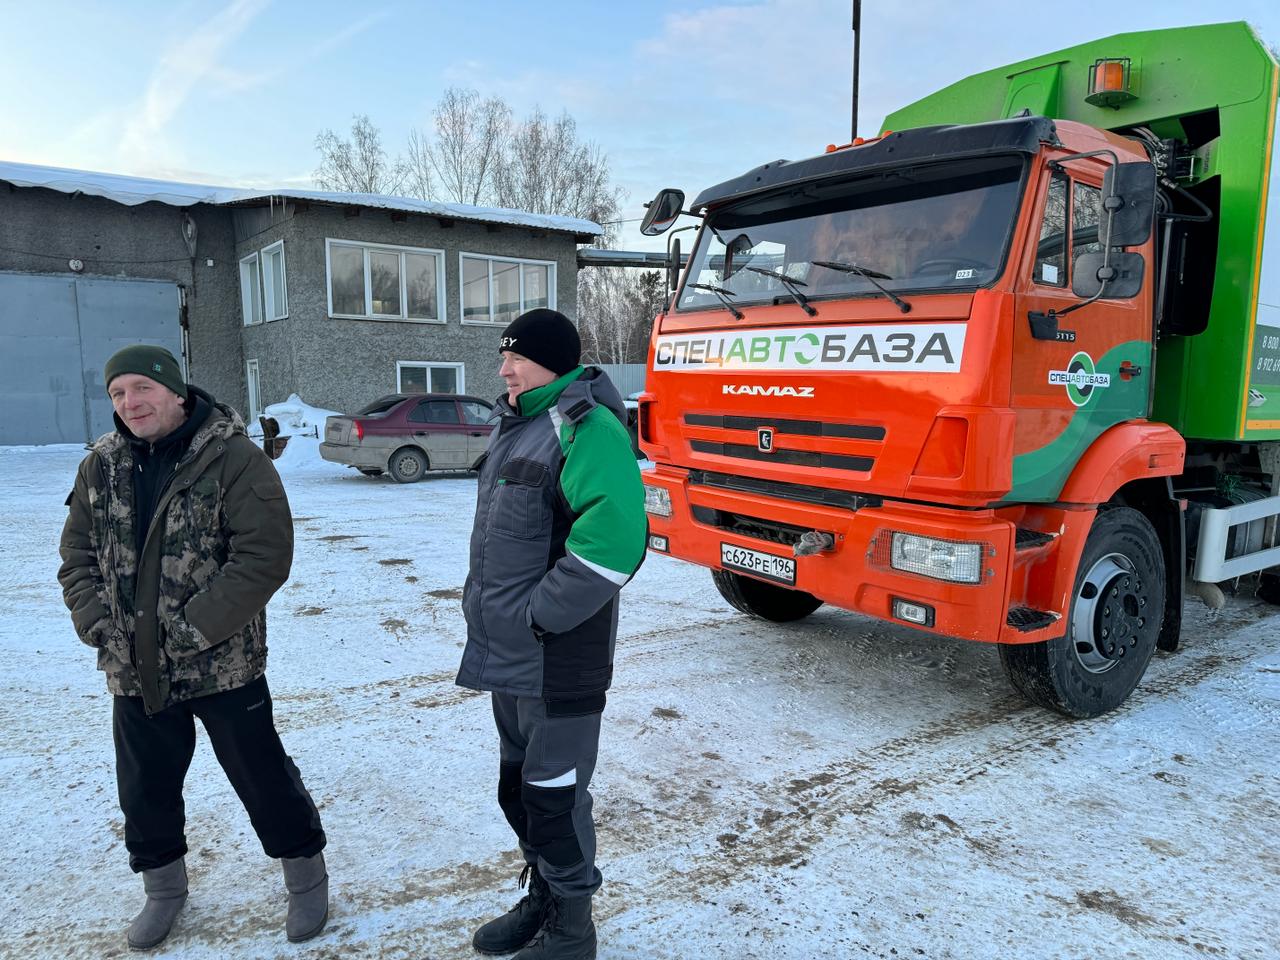 МЧС России поощрит сотрудников «Спецавтобазы», спасших людей из пожара под Богдановичем